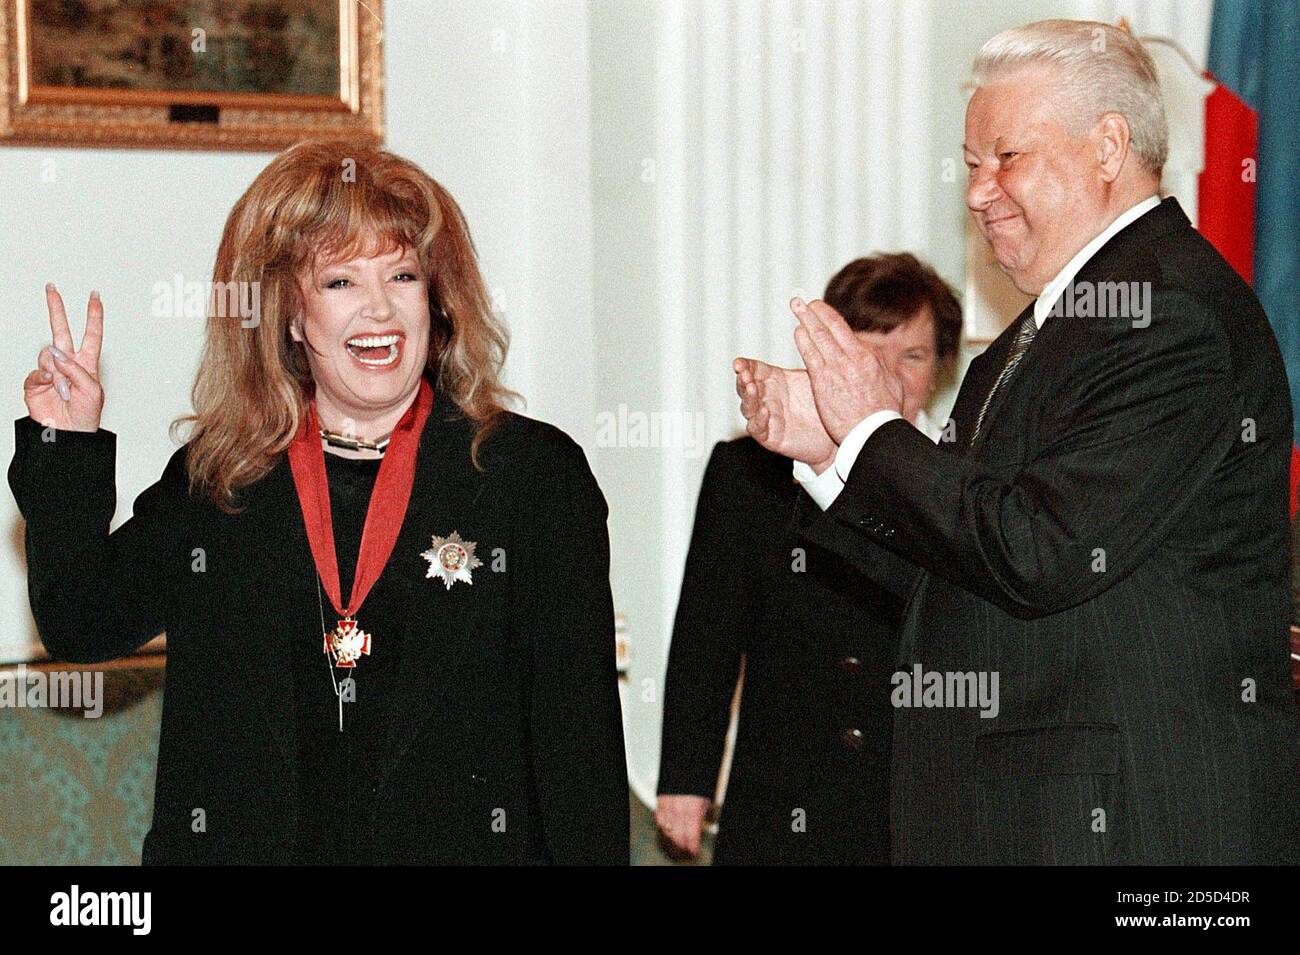 Il presidente russo Boris Yeltsin apulpisce alla cantante pop alla Pugacheva come lei gesti dopo averla conferita con l'ordine 'per il servizio alla Patria ' nel Cremlino aprile 15. Pugacheva, una delle più famose cantanti pop russe, festeggia il suo 50° compleanno giovedì. MF/WS Foto Stock